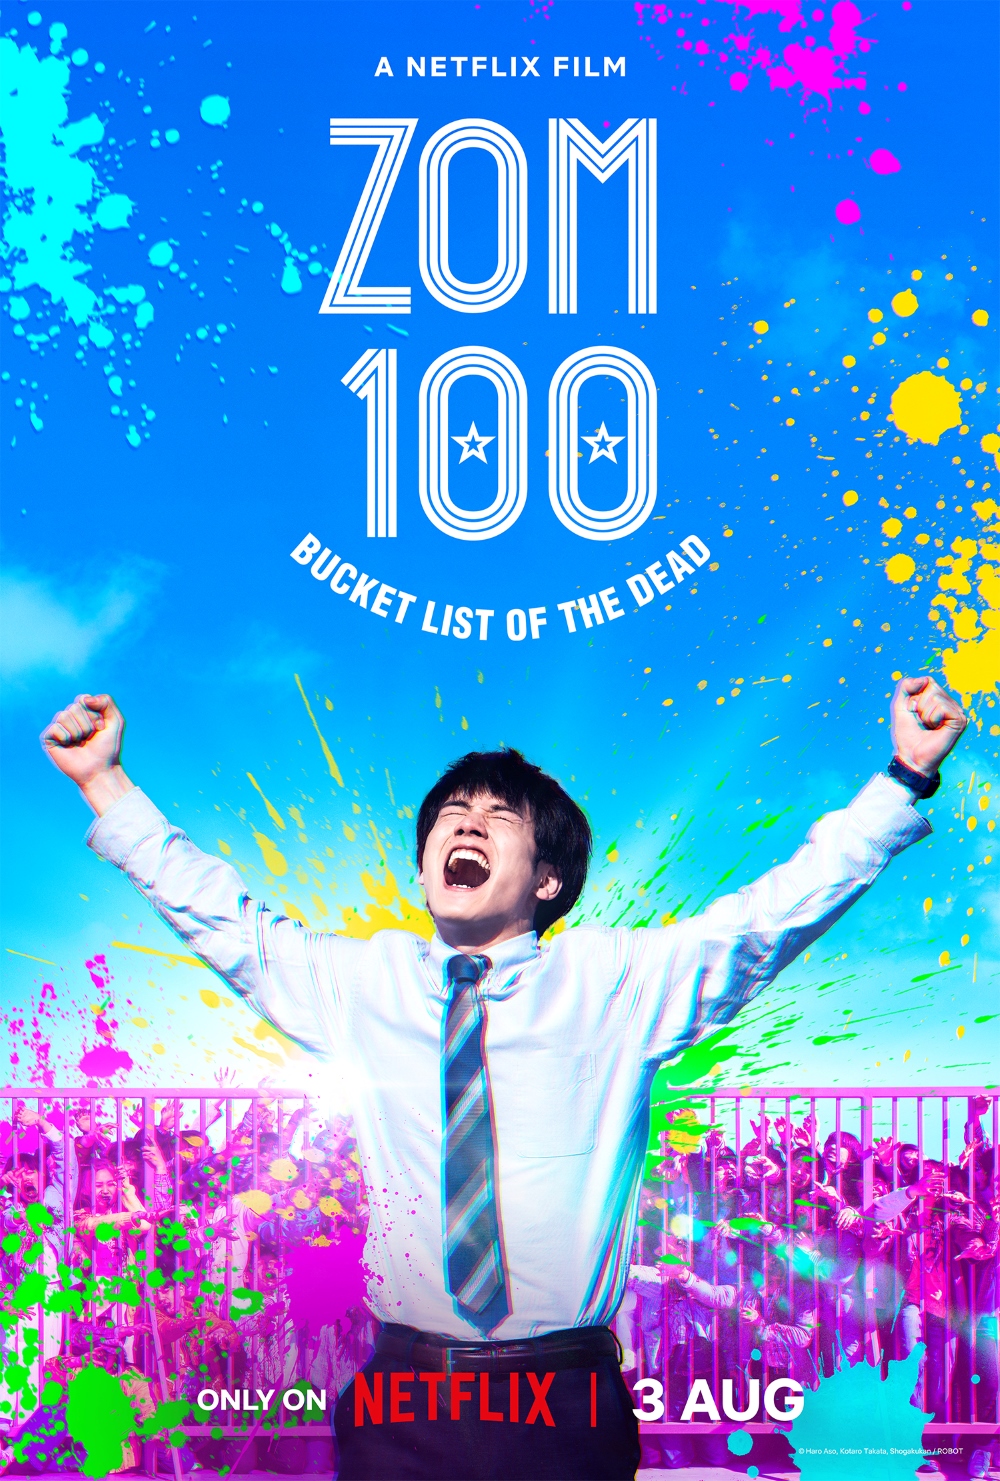 Zom 100: Bucket List of the Dead ซอม 100 - 100 สิ่งที่อยากทำก่อนจะกลายเป็นซอมบี้